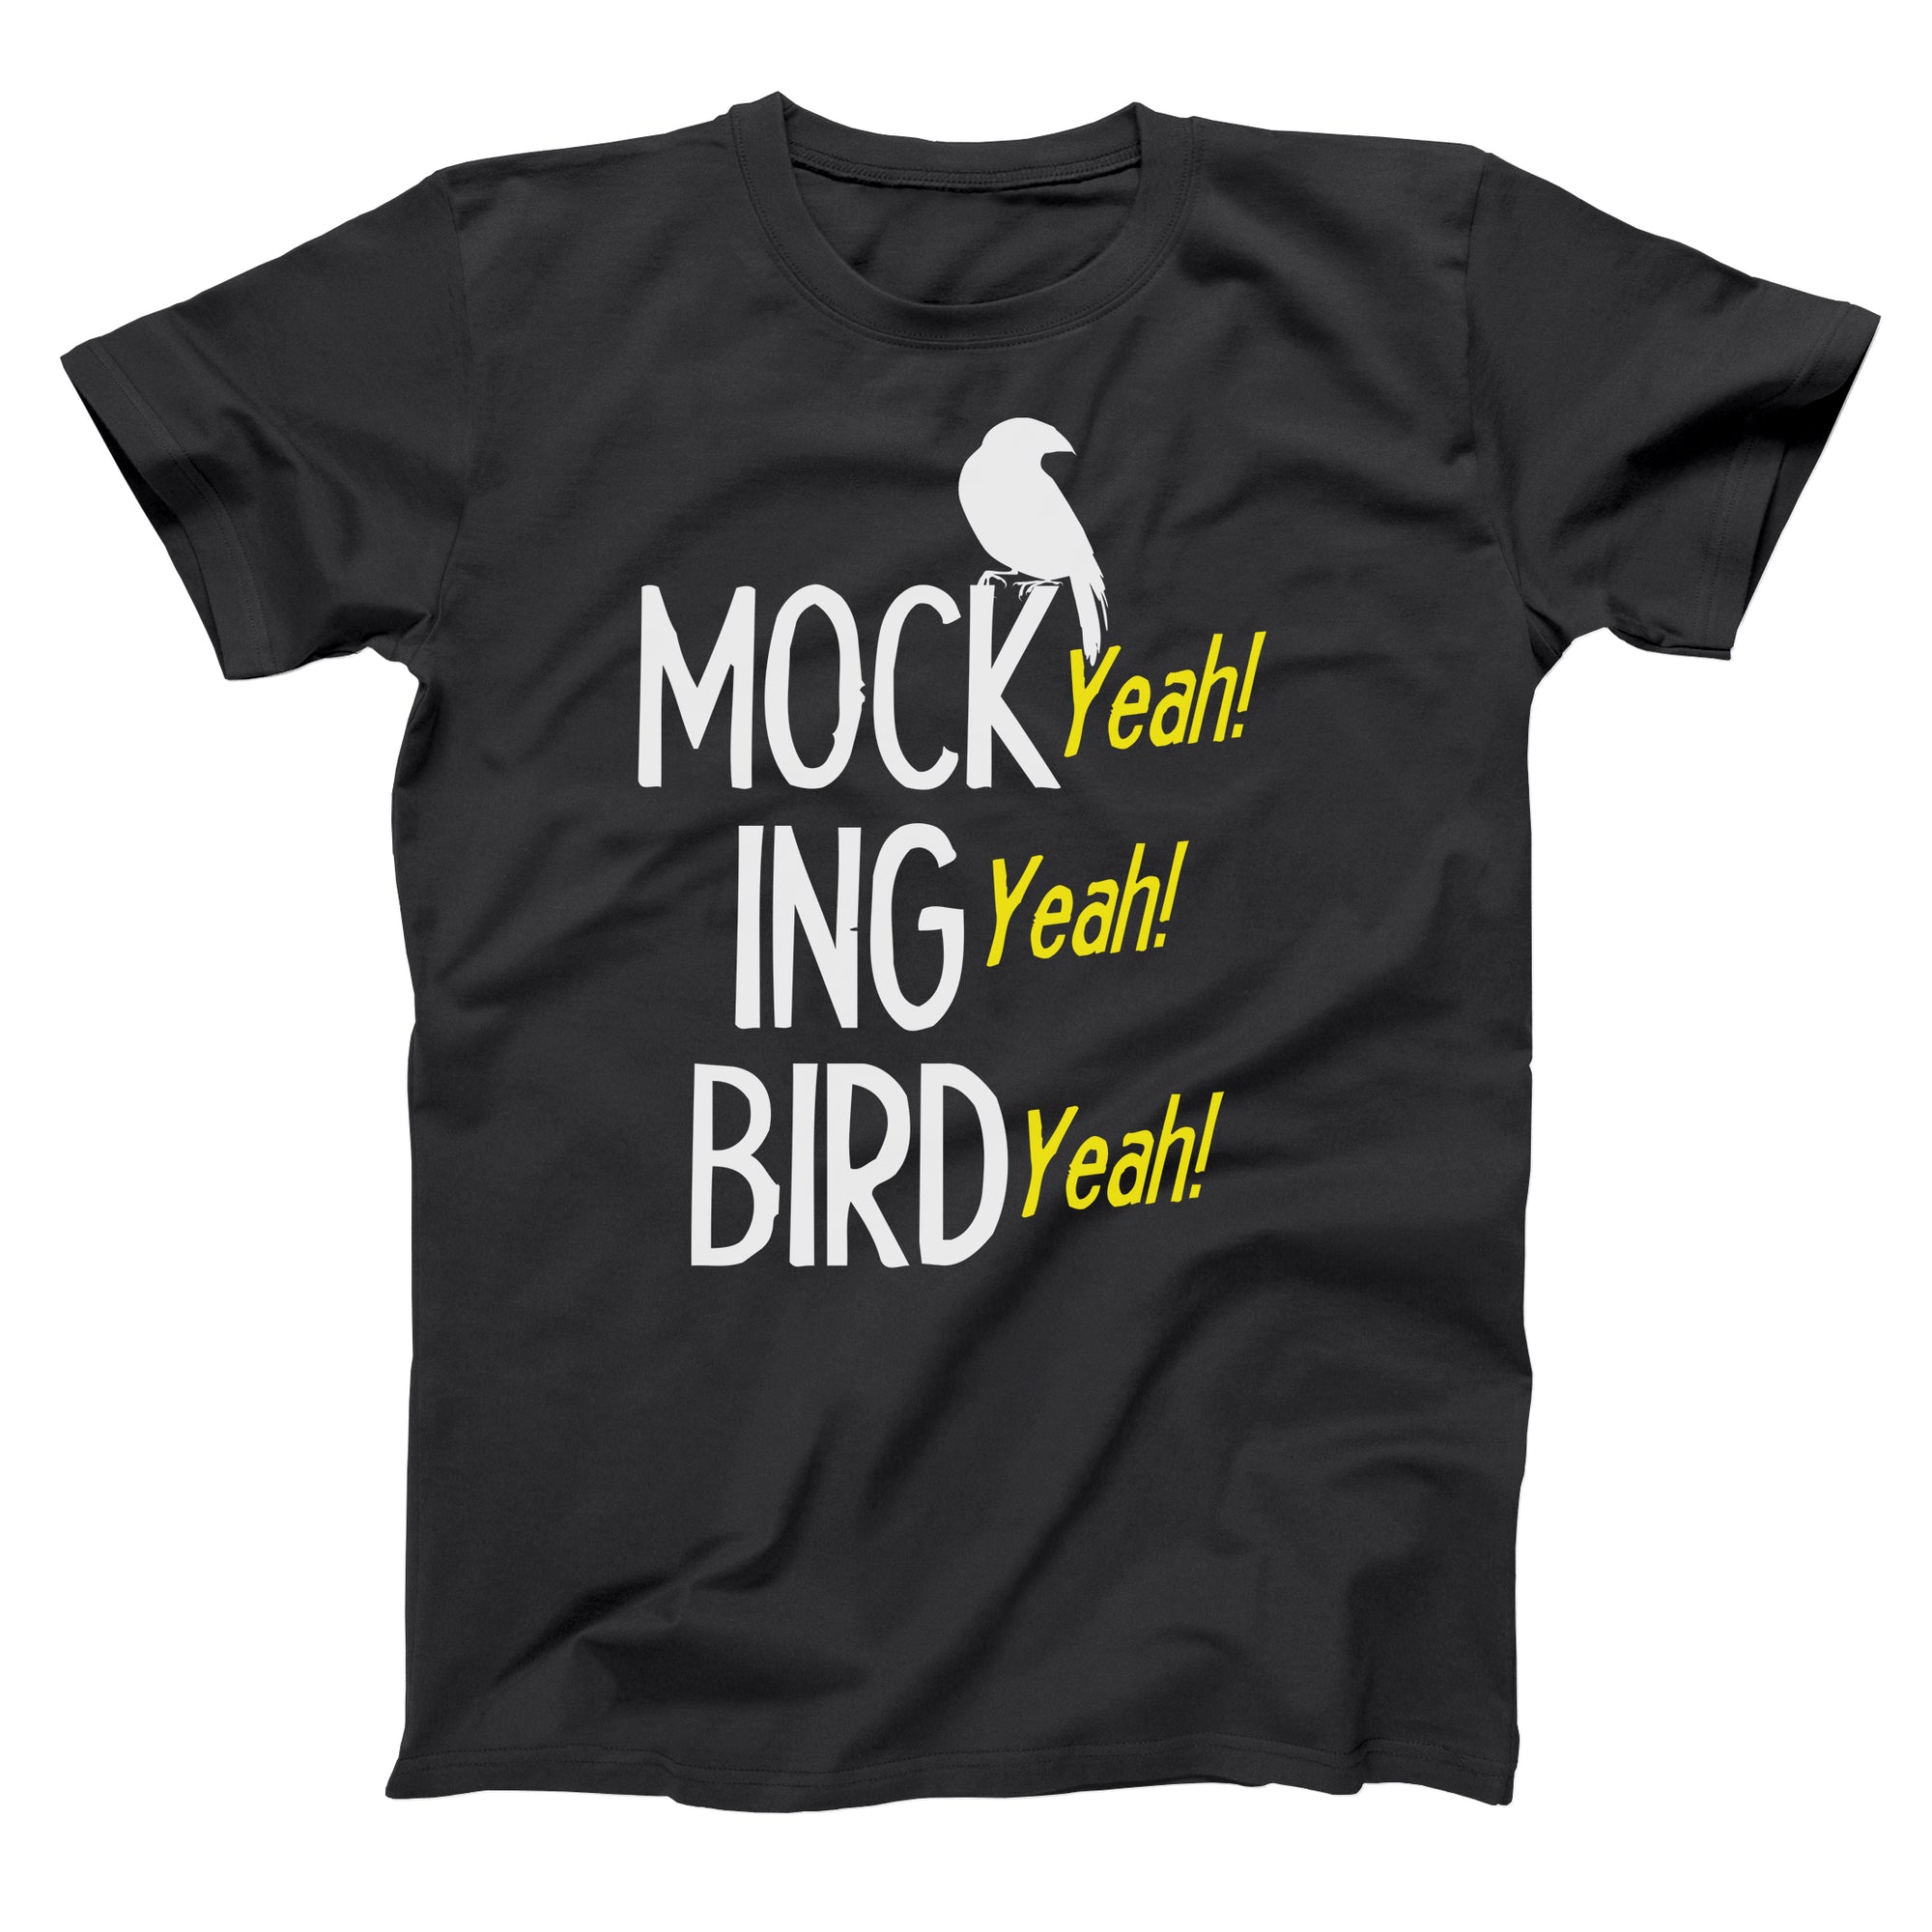 Mocking Bird Yeah Tshirt - Donkey Tees